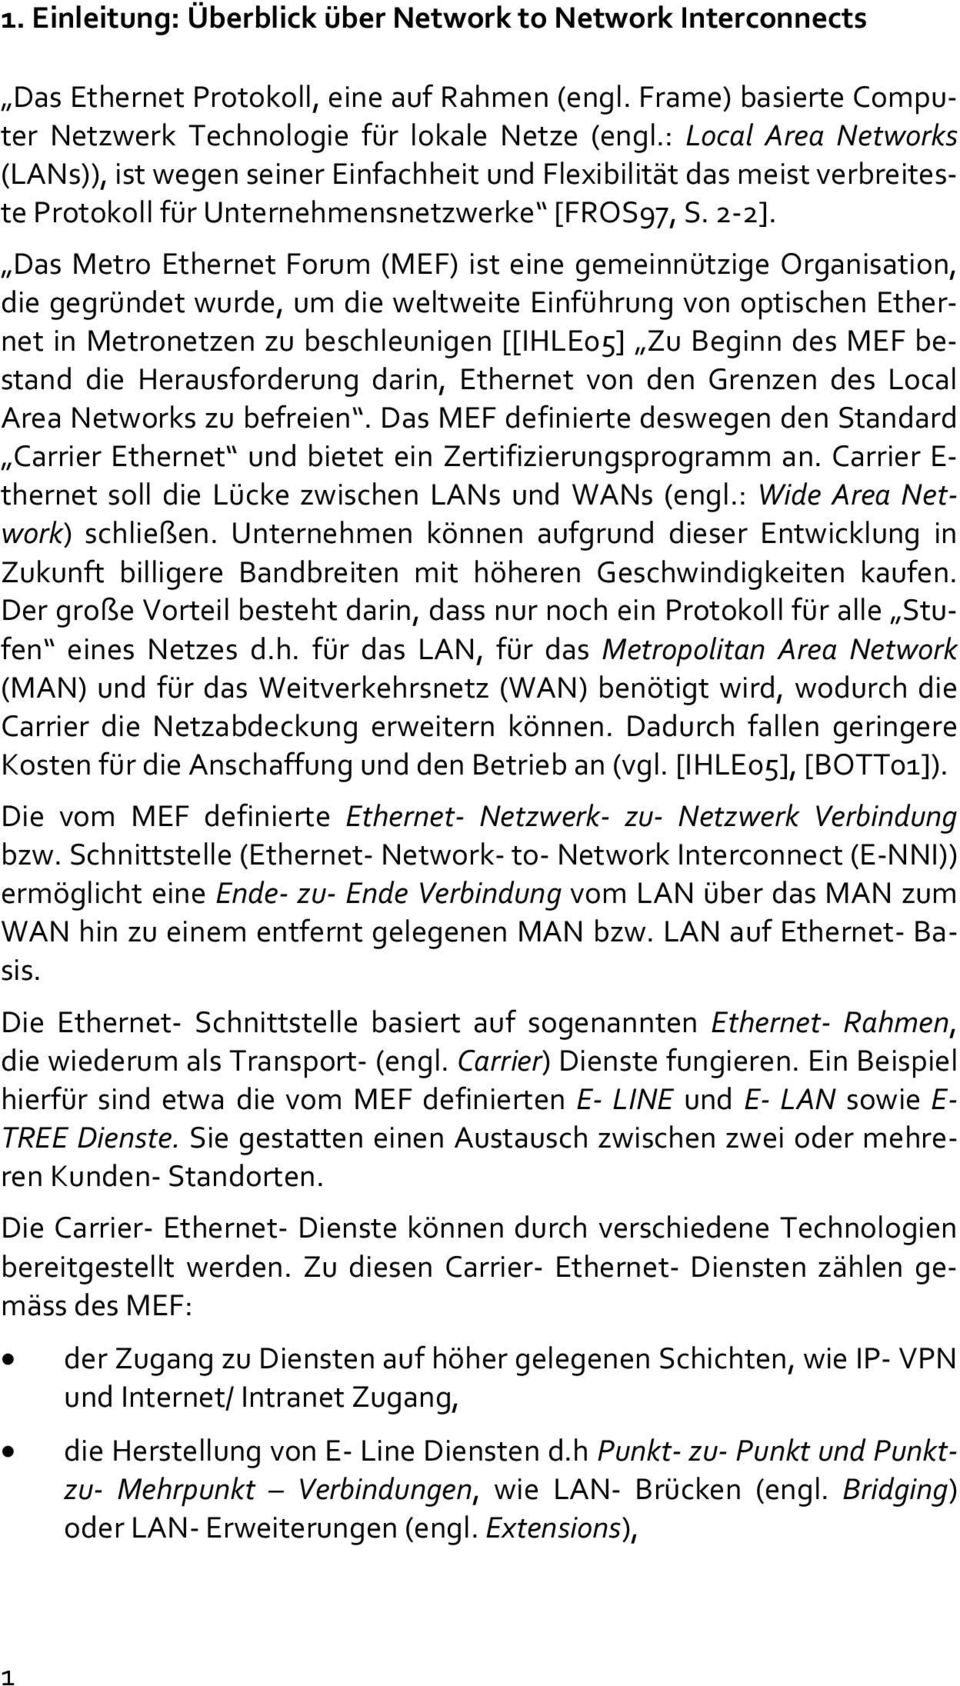 Das Metro Ethernet Forum (MEF) ist eine gemeinnützige Organisation, die gegründet wurde, um die weltweite Einführung von optischen Ethernet in Metronetzen zu beschleunigen [[IHLE05] Zu Beginn des MEF